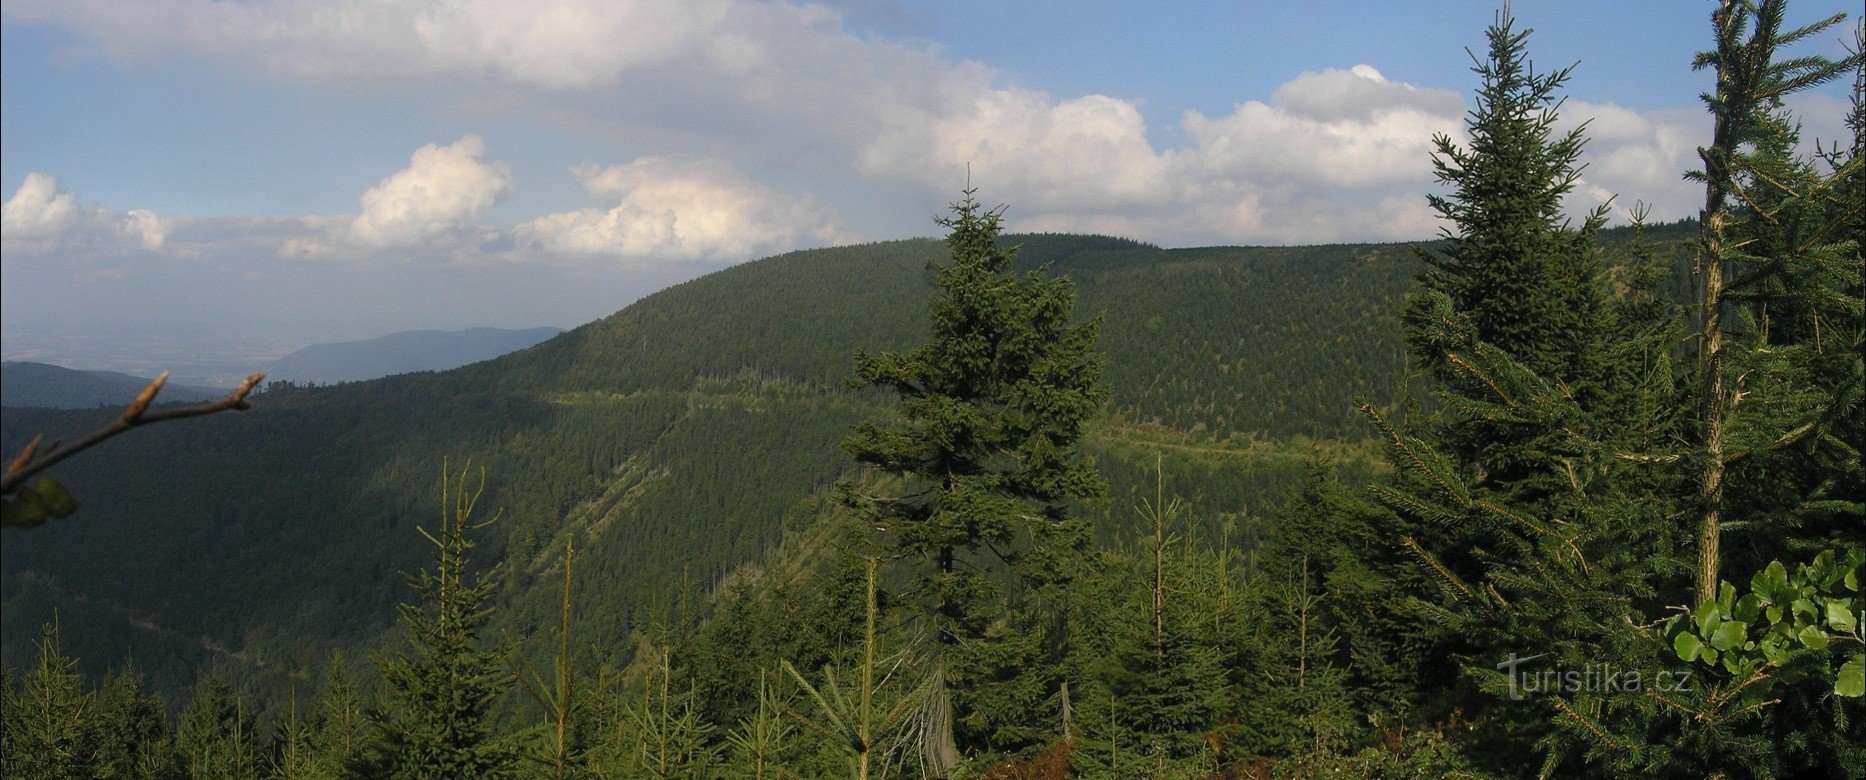 Caldera PR Malenovický - vista de la vertiente occidental del Malchor (septiembre 2010)